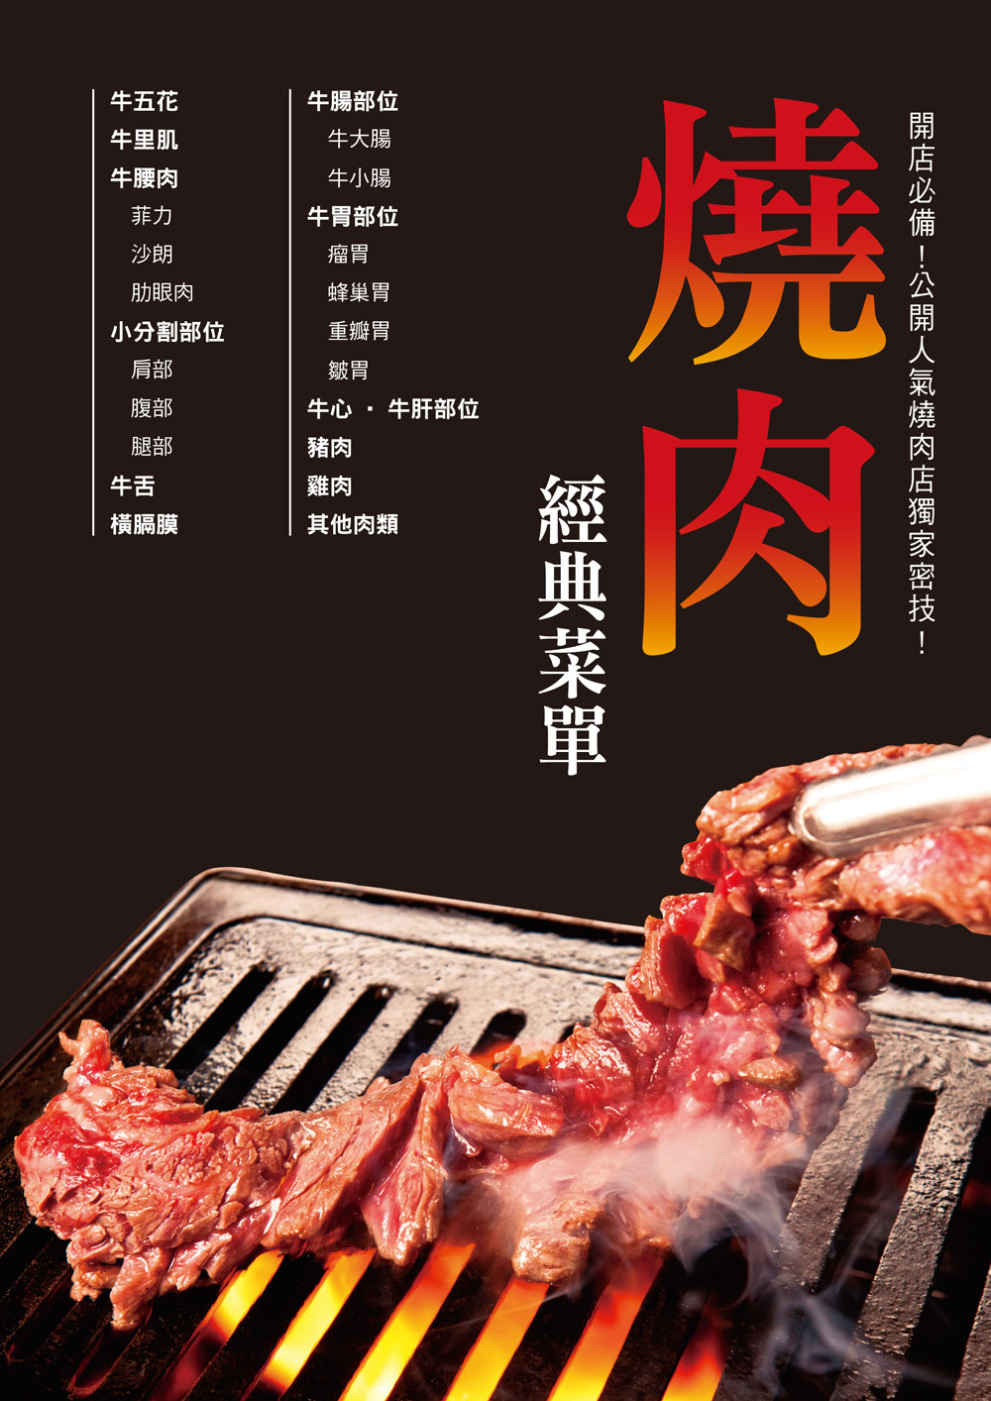 燒肉經典菜單：為想開燒肉店的你精心準備！設計吸引顧客的經典菜單！